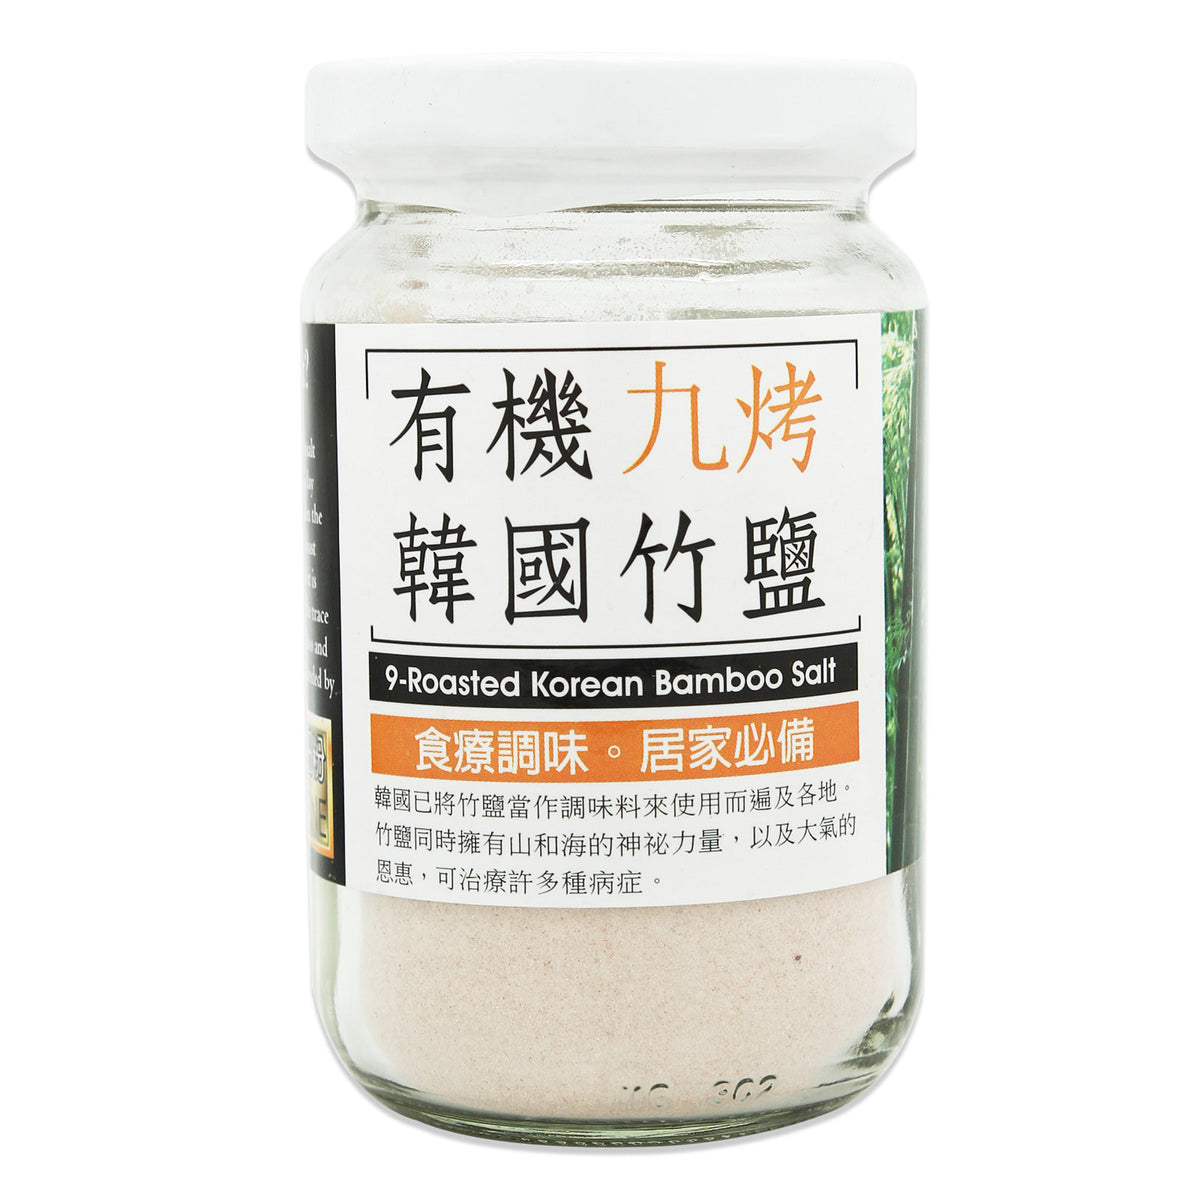 Korean Bamboo
Salt 9 Roasted - Iodised (200GM)